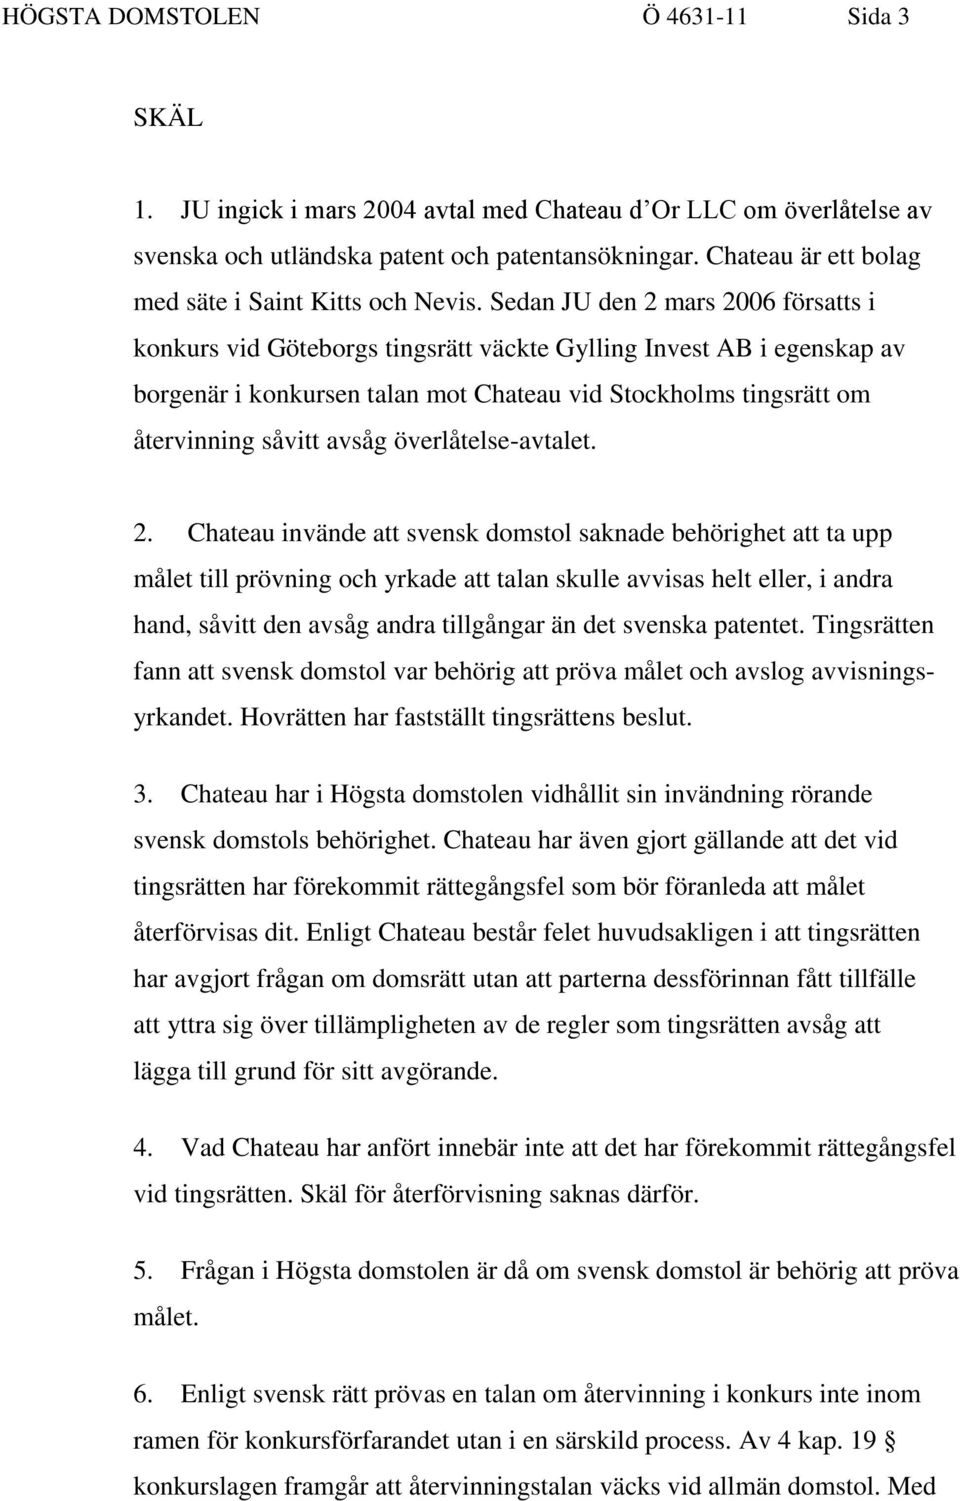 Sedan JU den 2 mars 2006 försatts i konkurs vid Göteborgs tingsrätt väckte Gylling Invest AB i egenskap av borgenär i konkursen talan mot Chateau vid Stockholms tingsrätt om återvinning såvitt avsåg